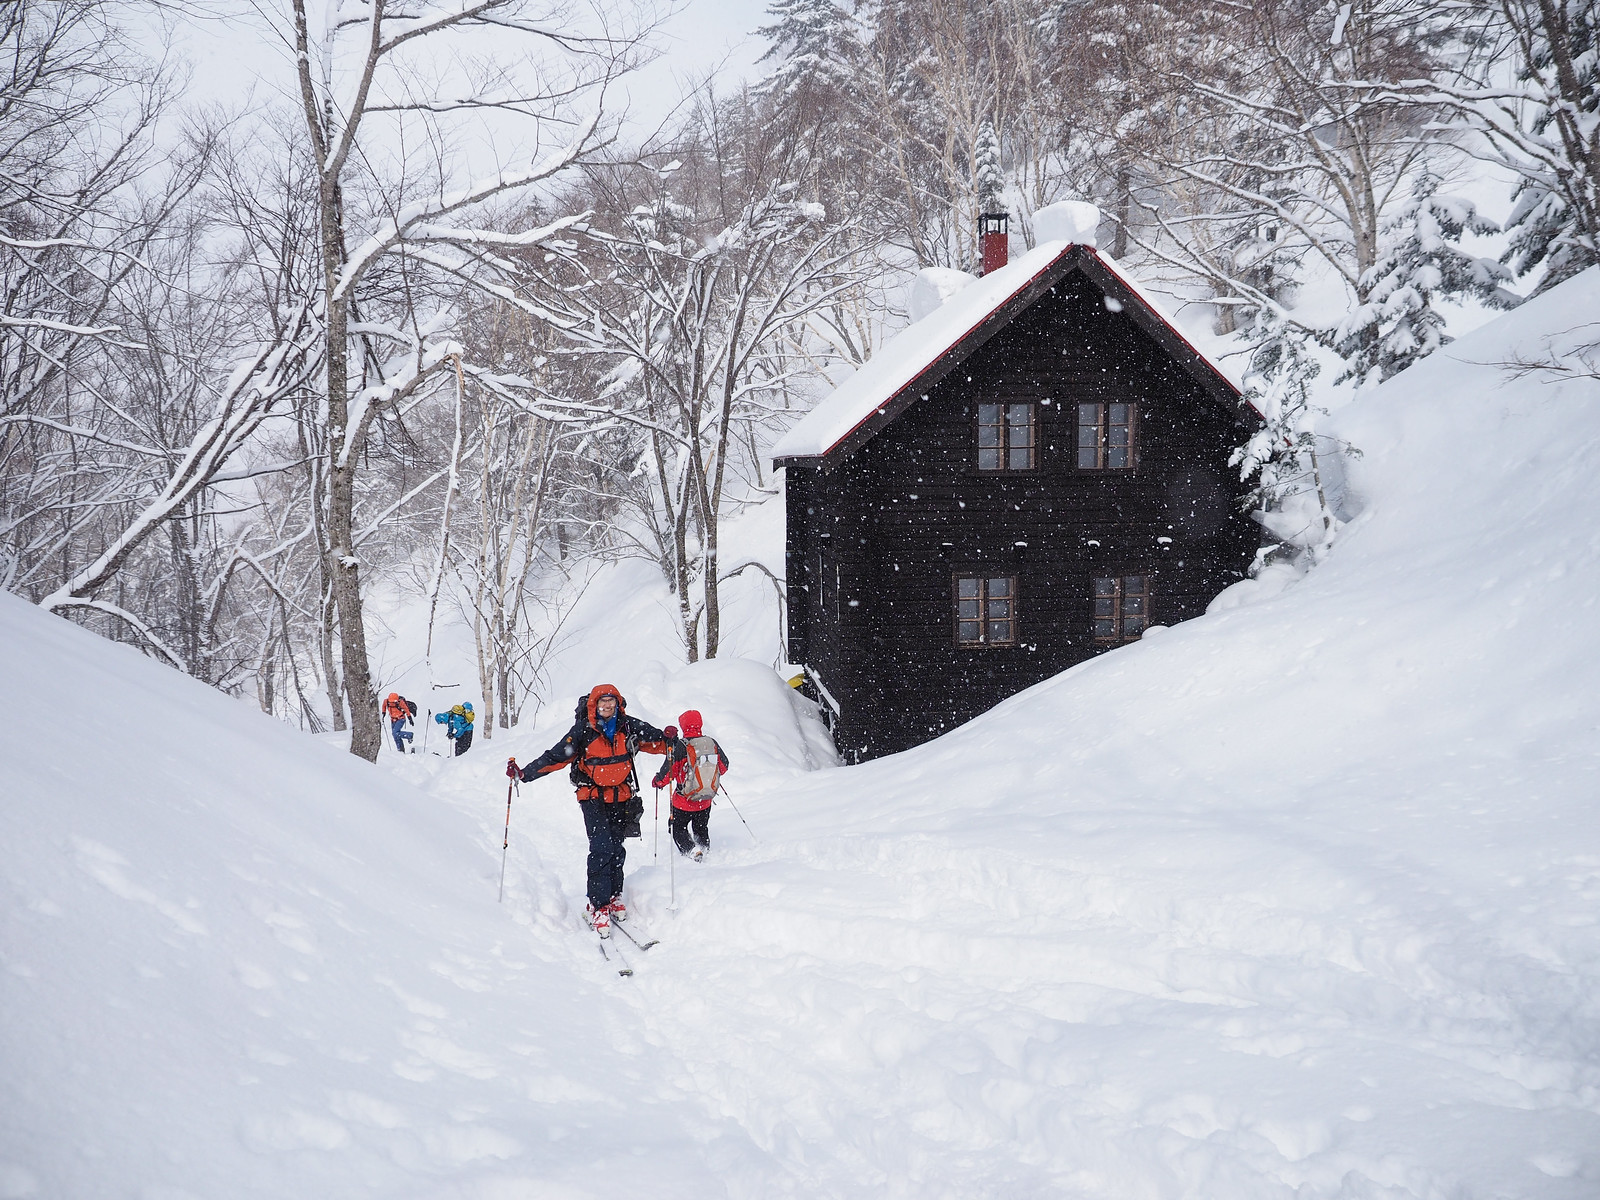 Mt. Sapporo Hiyamizu Hut ski touring (Hokkaido, Japan)